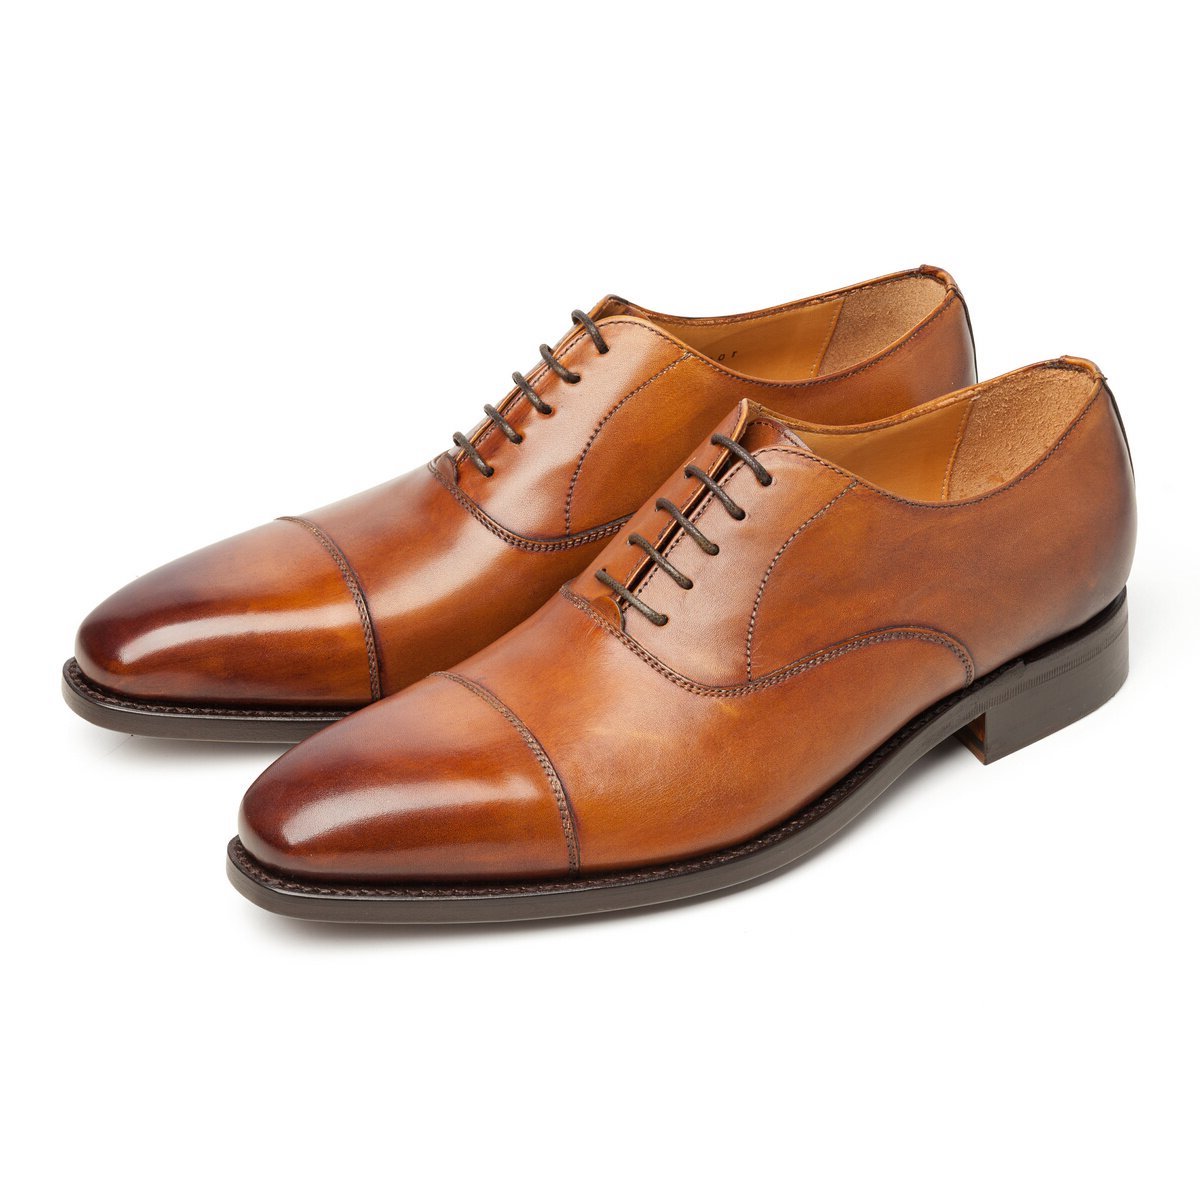 Туфли мужские светлые. Berwick 3010. Оксфорды (Oxford Shoes) обувь 2021. Berwick Броги 322. Испанская обувь Berwick.